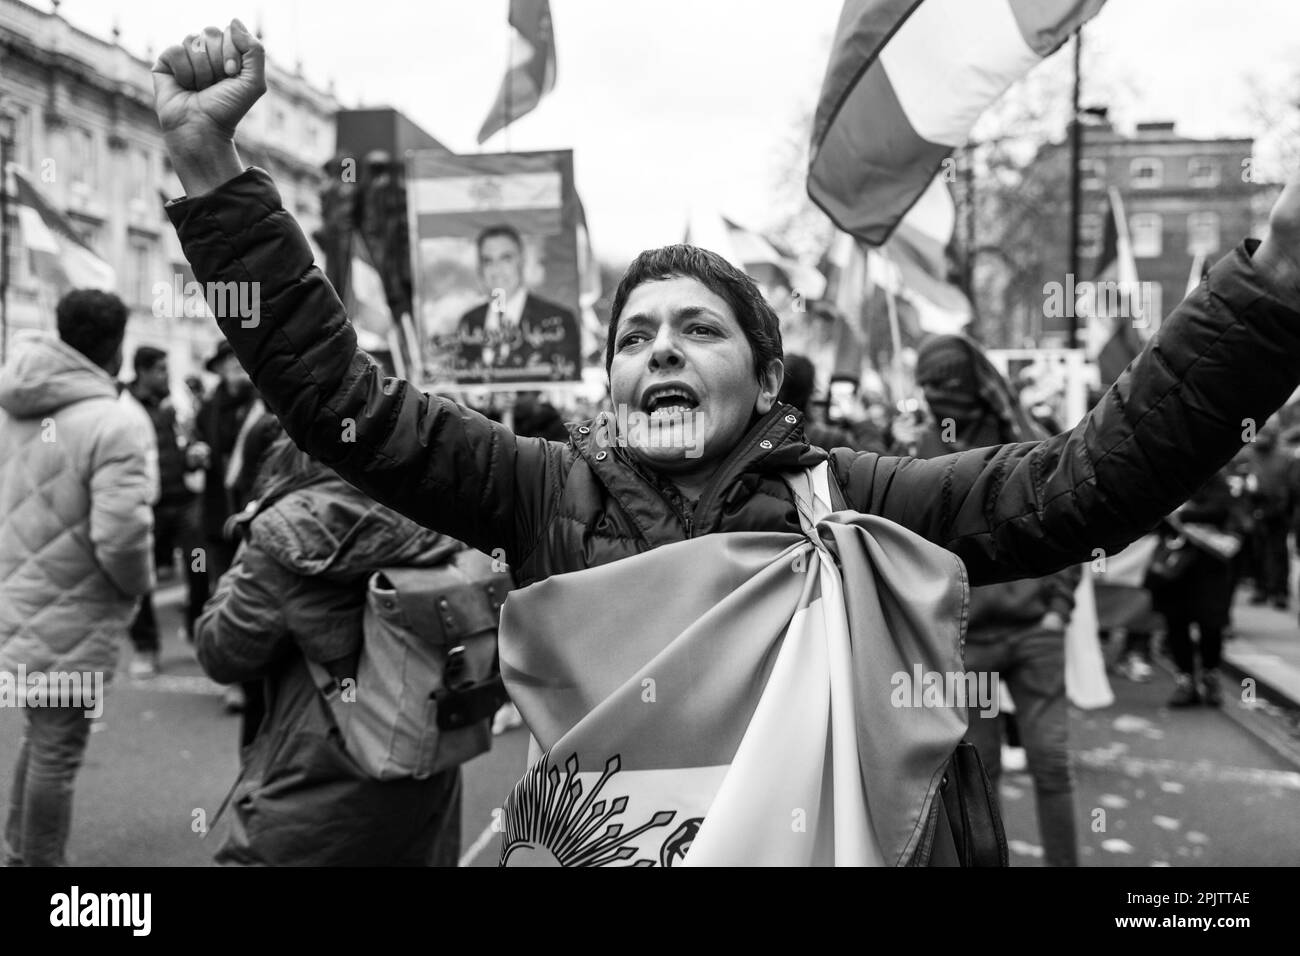 Gli iraniani e i sostenitori britannici hanno marciato attraverso il centro di Londra fino a Downing Street per protestare contro la Repubblica islamica al governo in Iran e la condotta dell’IRGC. Il 16 settembre 2022, la donna iraniana di 22 anni, Mahsa Amini, conosciuta anche come Jina Amini, è morta per le ferite che ha ricevuto mentre era in custodia della polizia morale religiosa del governo iraniano. La morte di Amini ha provocato una serie di proteste in Iran contro la Repubblica islamica al governo. Foto Stock